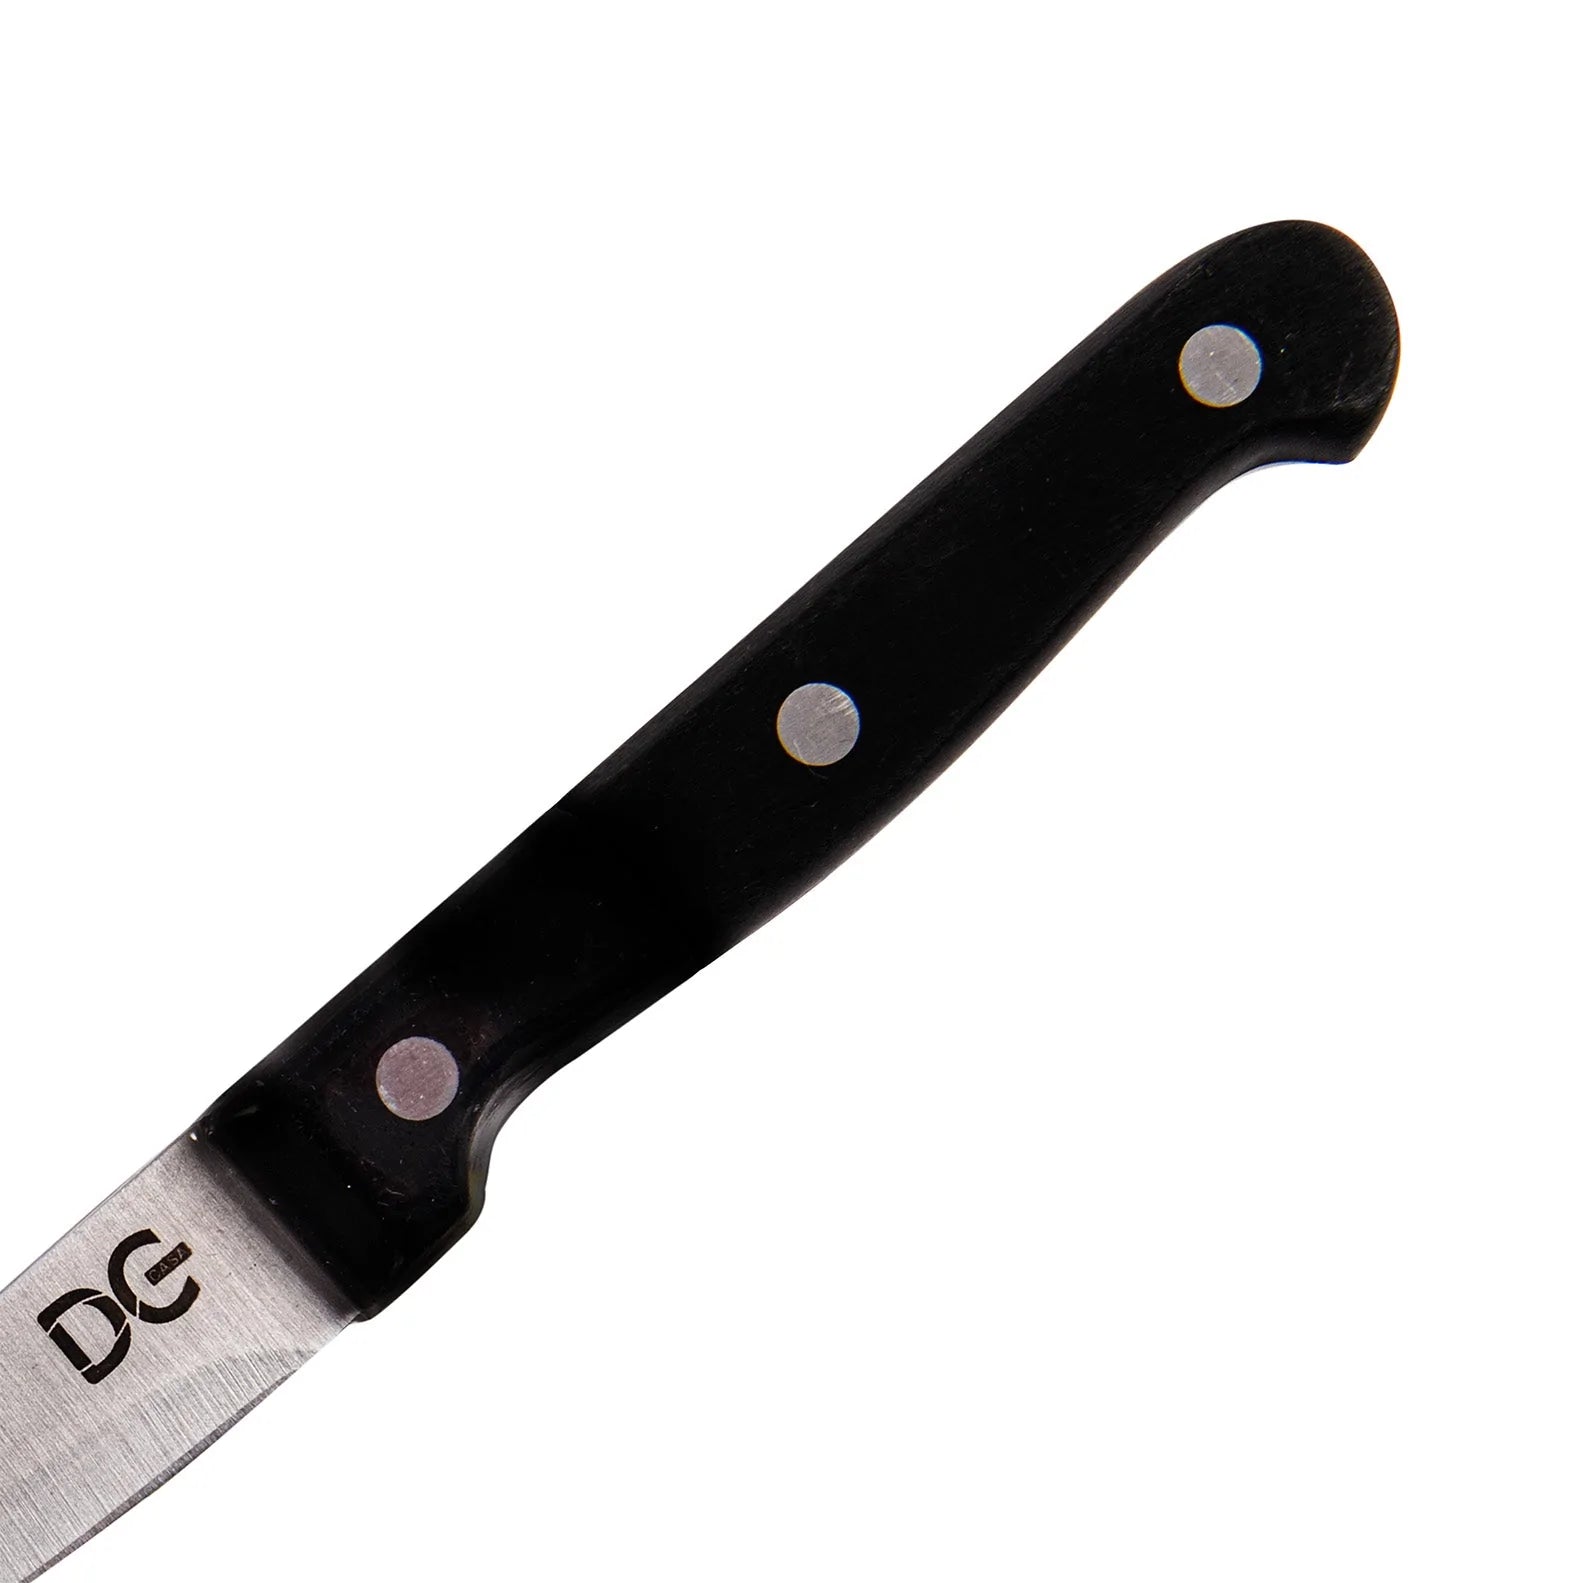 Stalowy nóż SPELCHCCHINO z czarnym ergonomicznym uchwytem - 9 cm